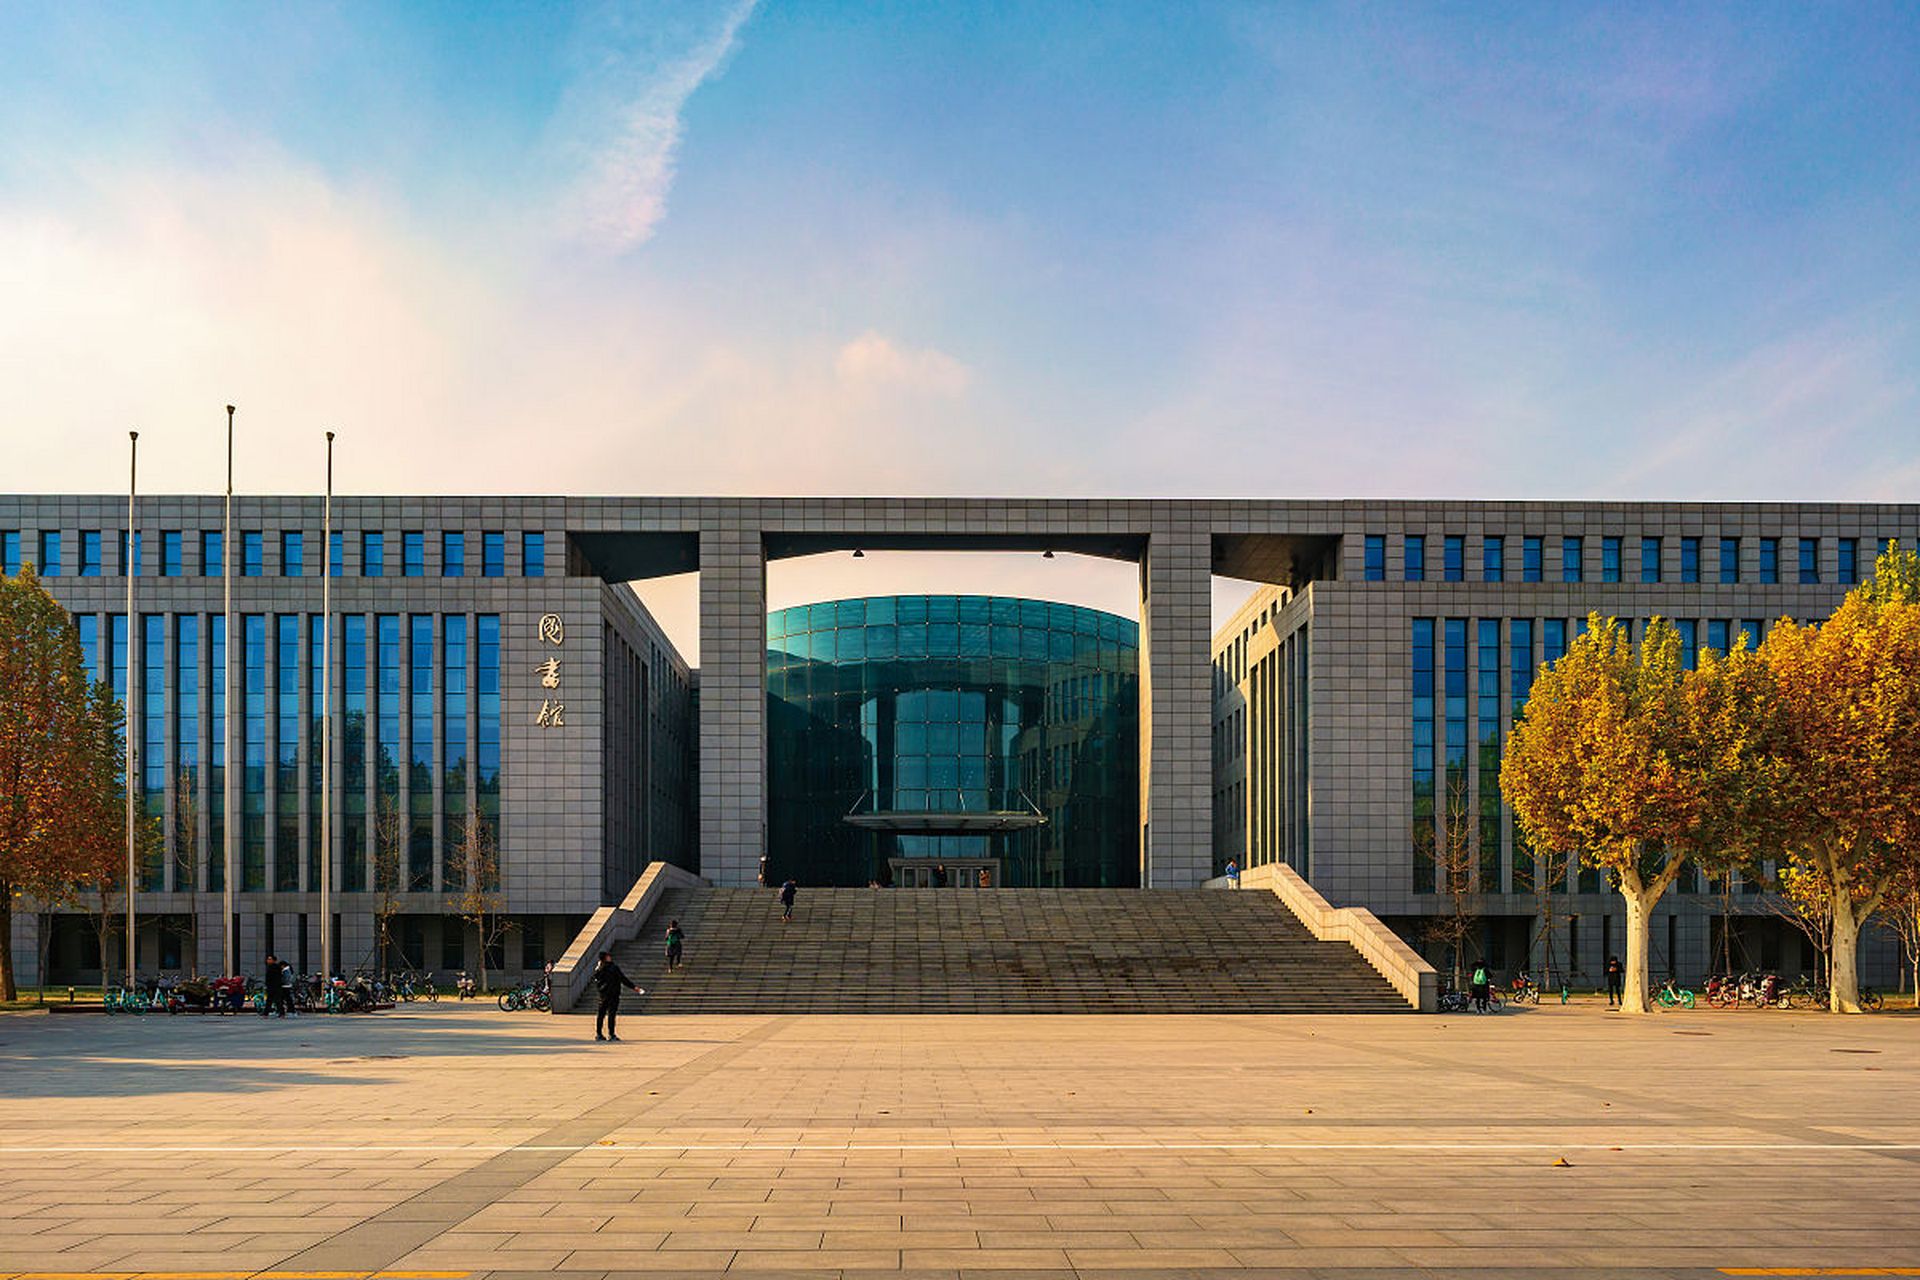 学术声誉:河北师范大学在中国教育界享有良好声誉,具有较强的教学